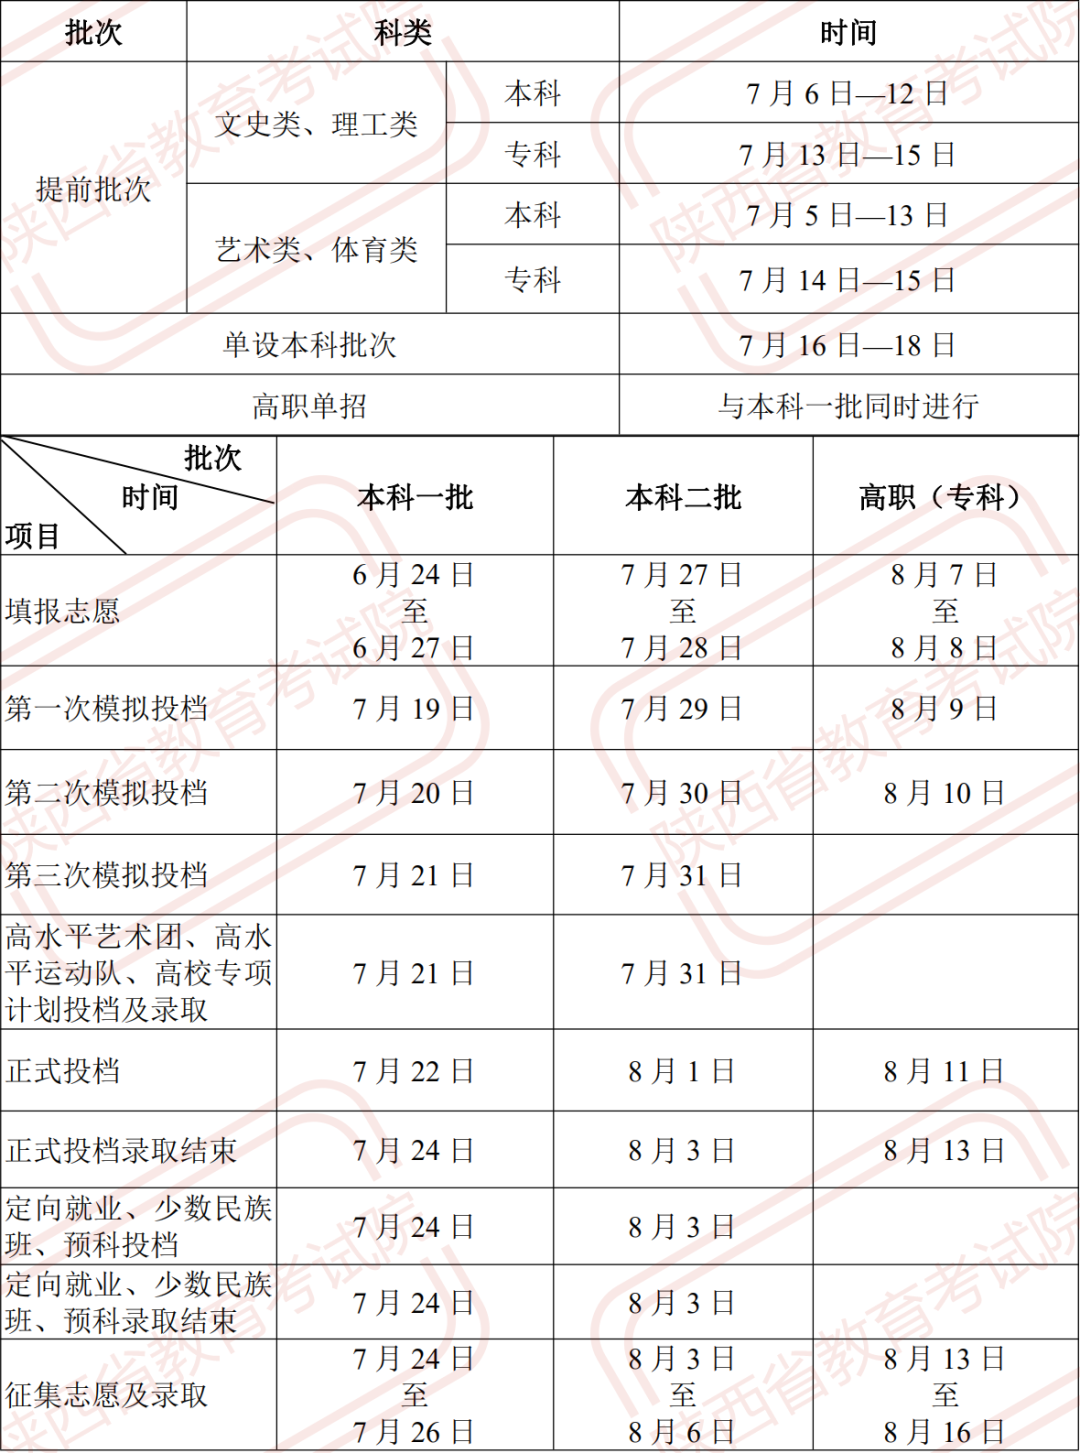 2021年陕西省高考录取于7月6日至8月16日进行